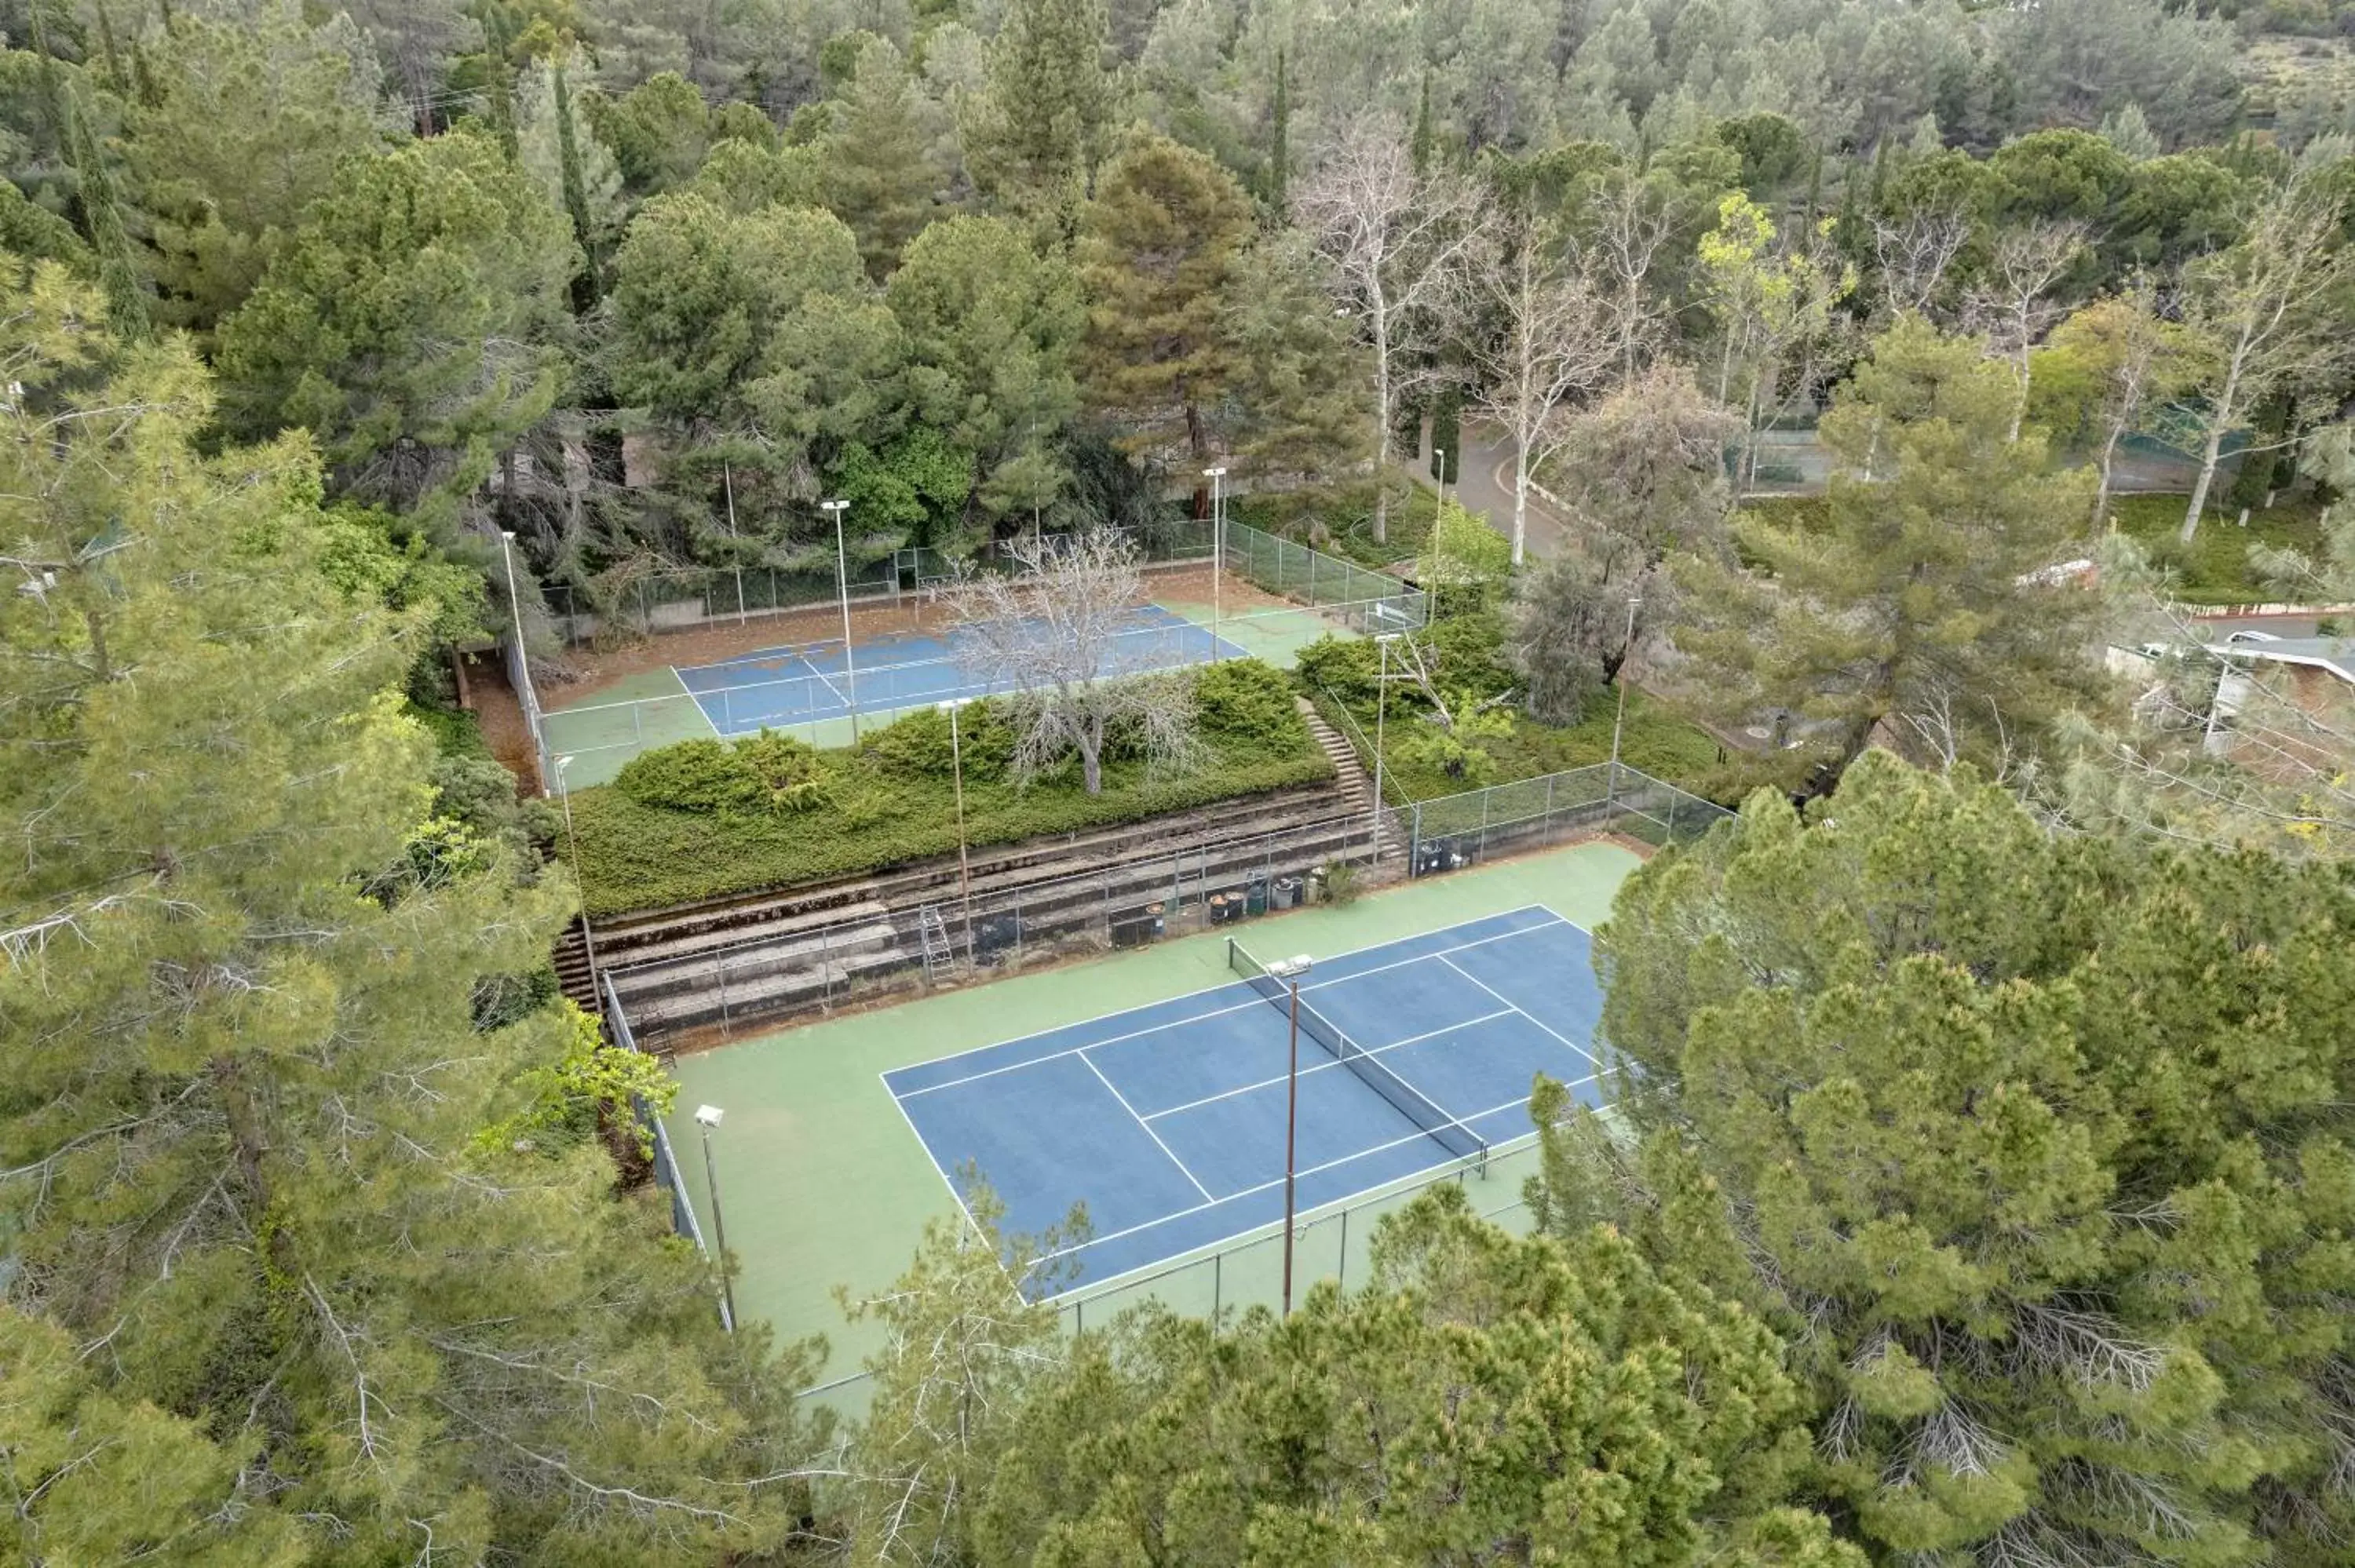 Tennis court, Bird's-eye View in Konocti Harbor Resort